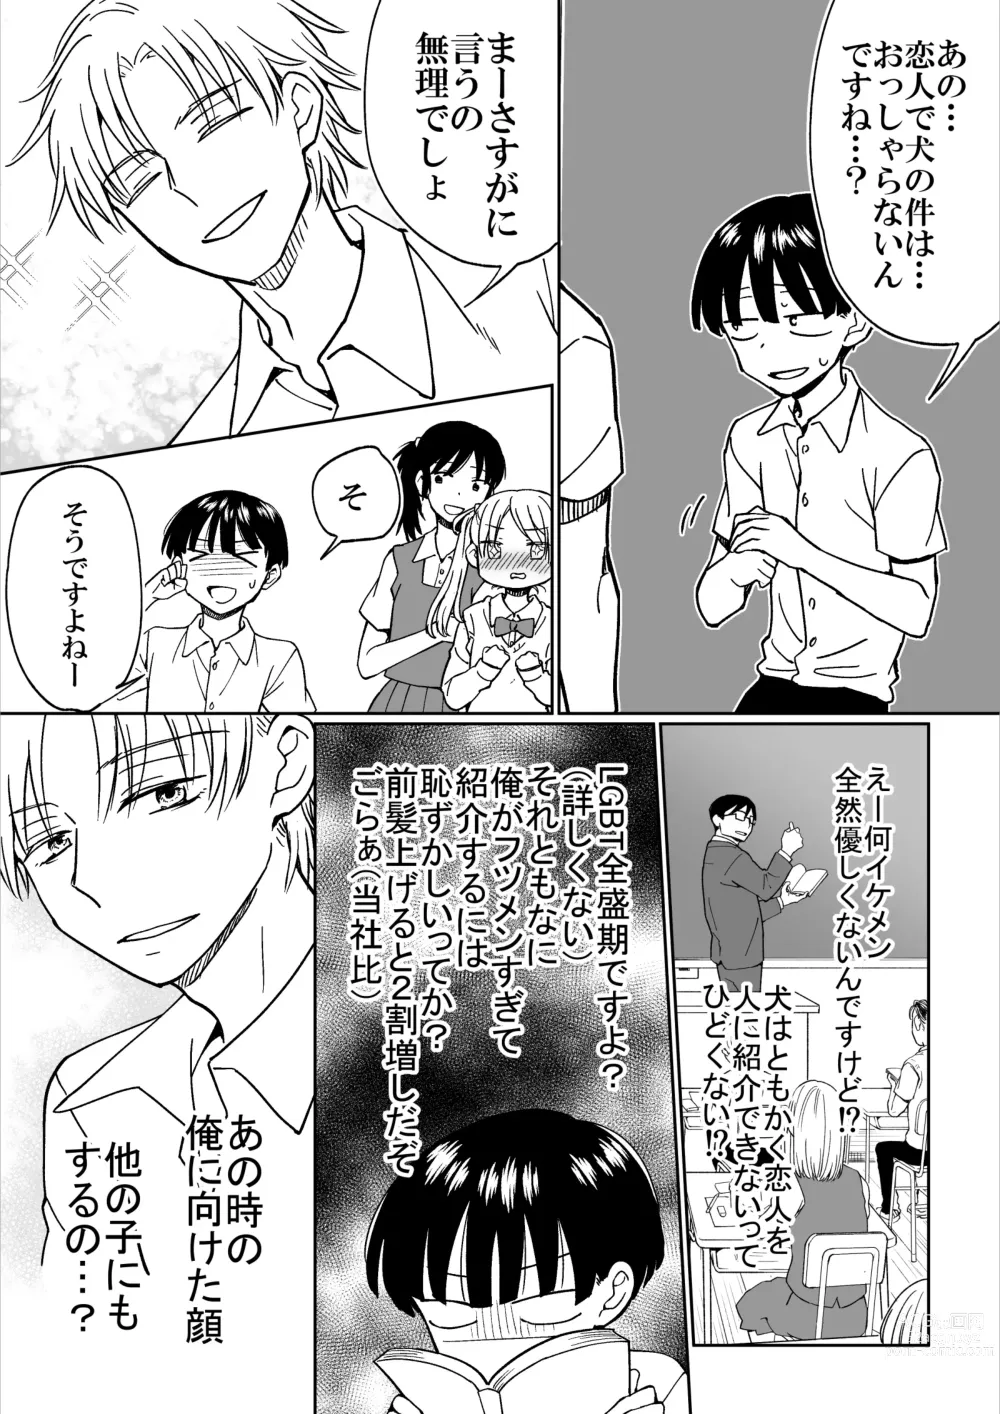 Page 28 of doujinshi Heibon Danshi dakedo Ikemen Danshi ni Iiyorarete Komattemasu